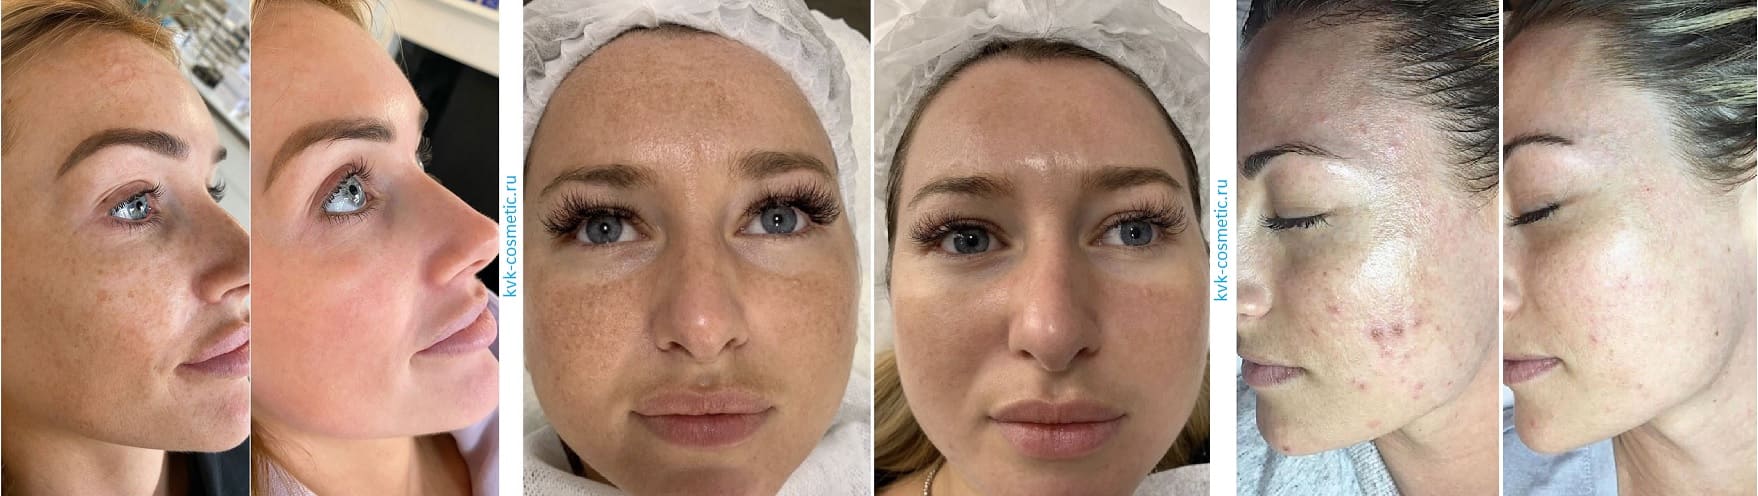 Лечение проблемной кожи лица: фото до и после, клиника косметологии В.Н. Комаровой в Туле